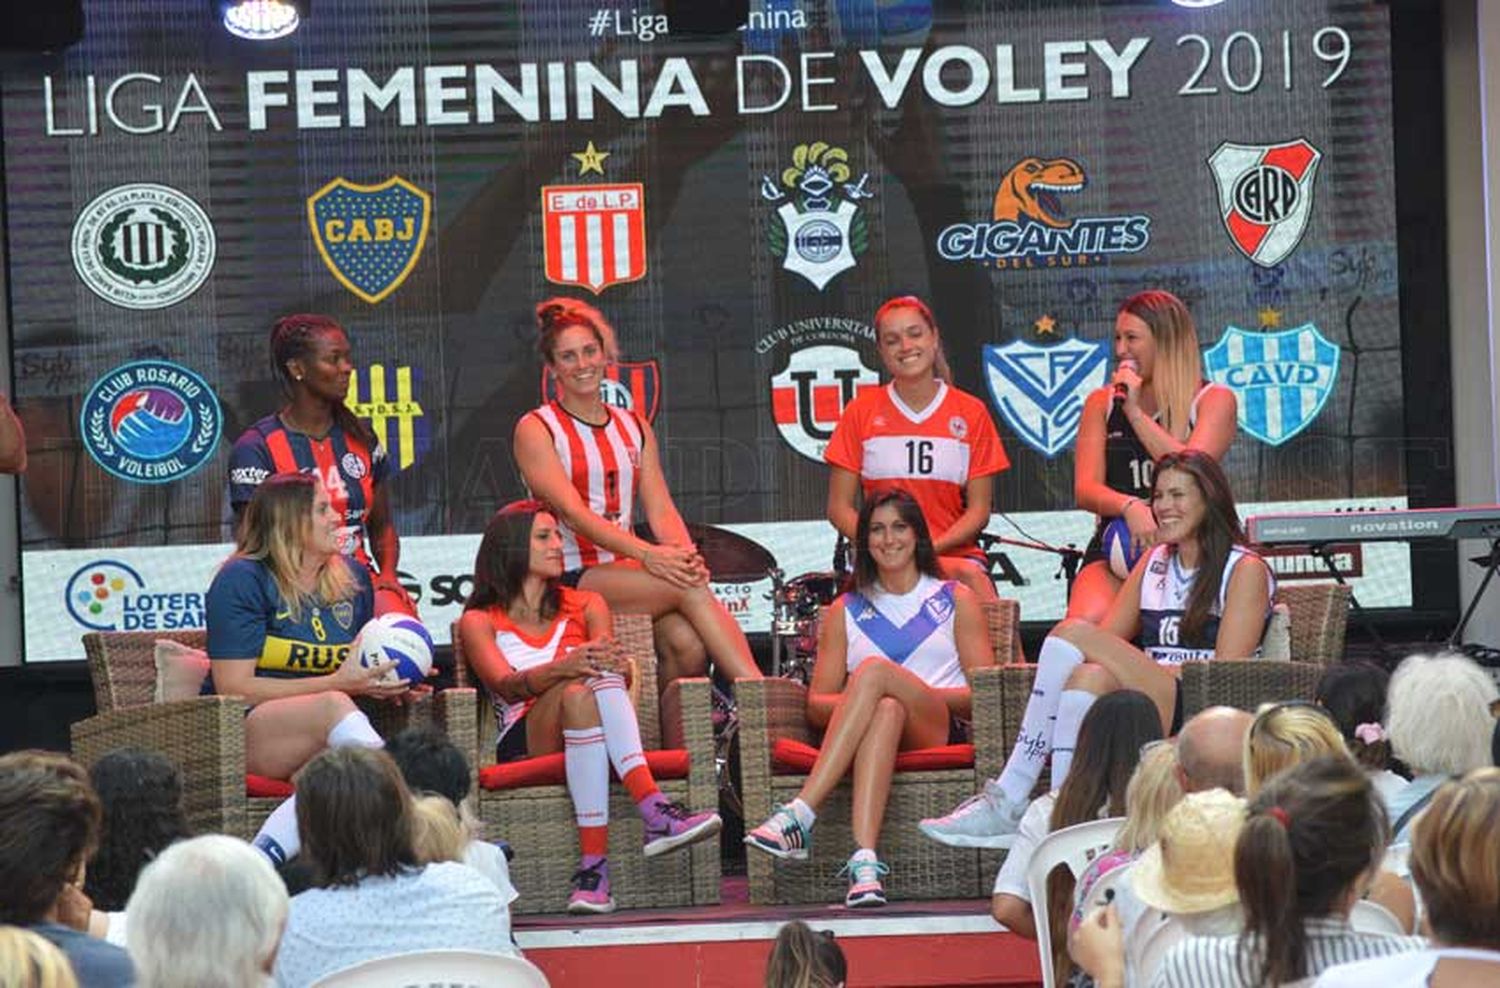 La Liga Femenina de Voley se presentó en Espacio Clarín